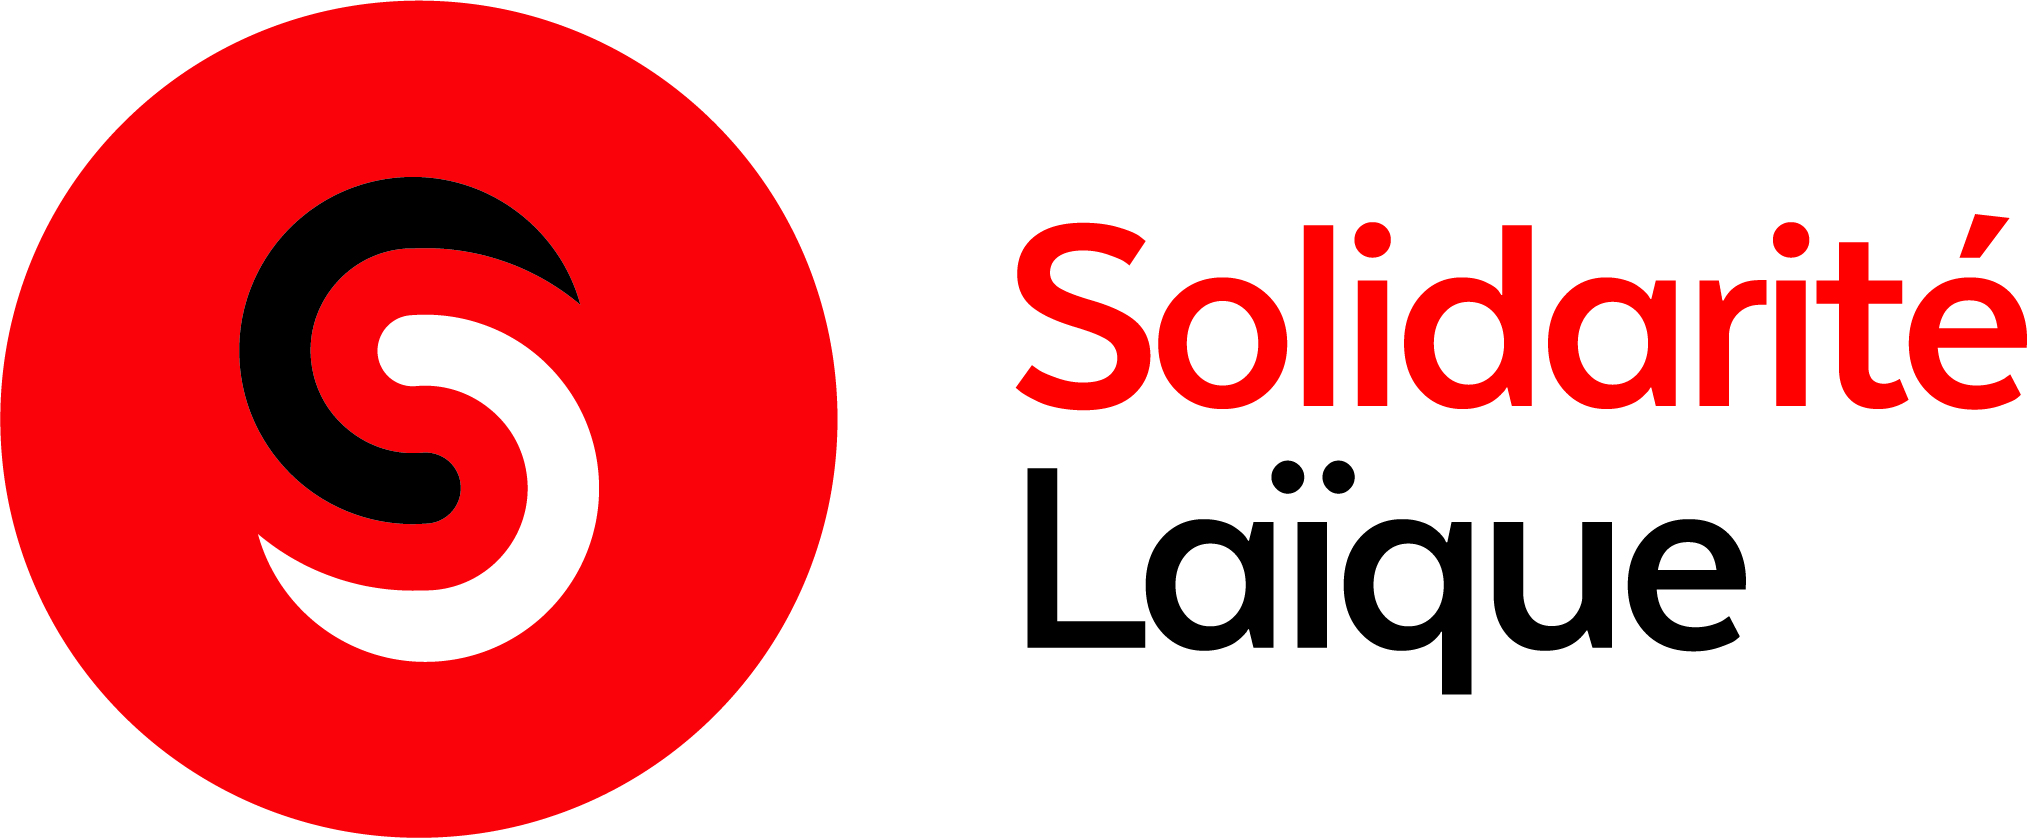 logo solidarité laïque